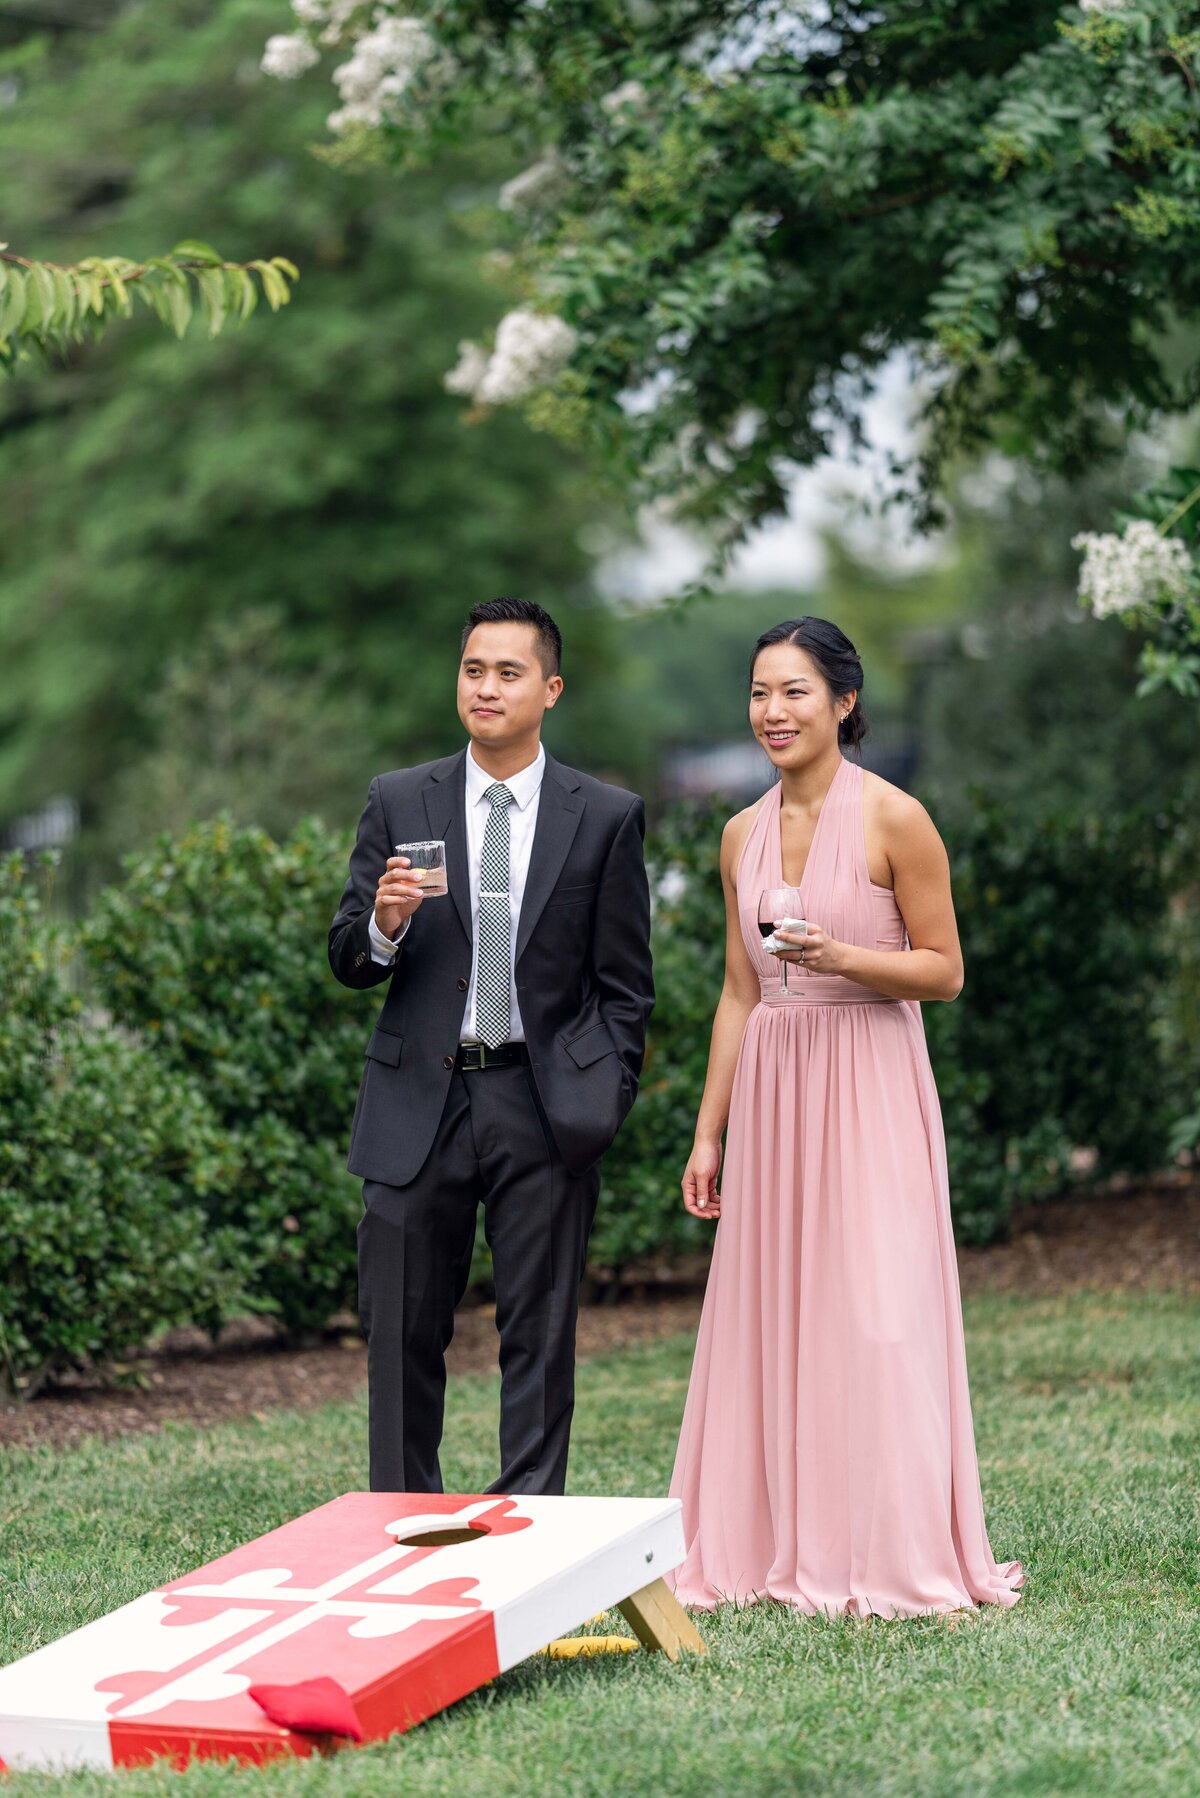 belmont-manor-wedding-baltimore-wedding-photographer-bailey-weddings-asian-american-wedding-karenadixon-2022-337